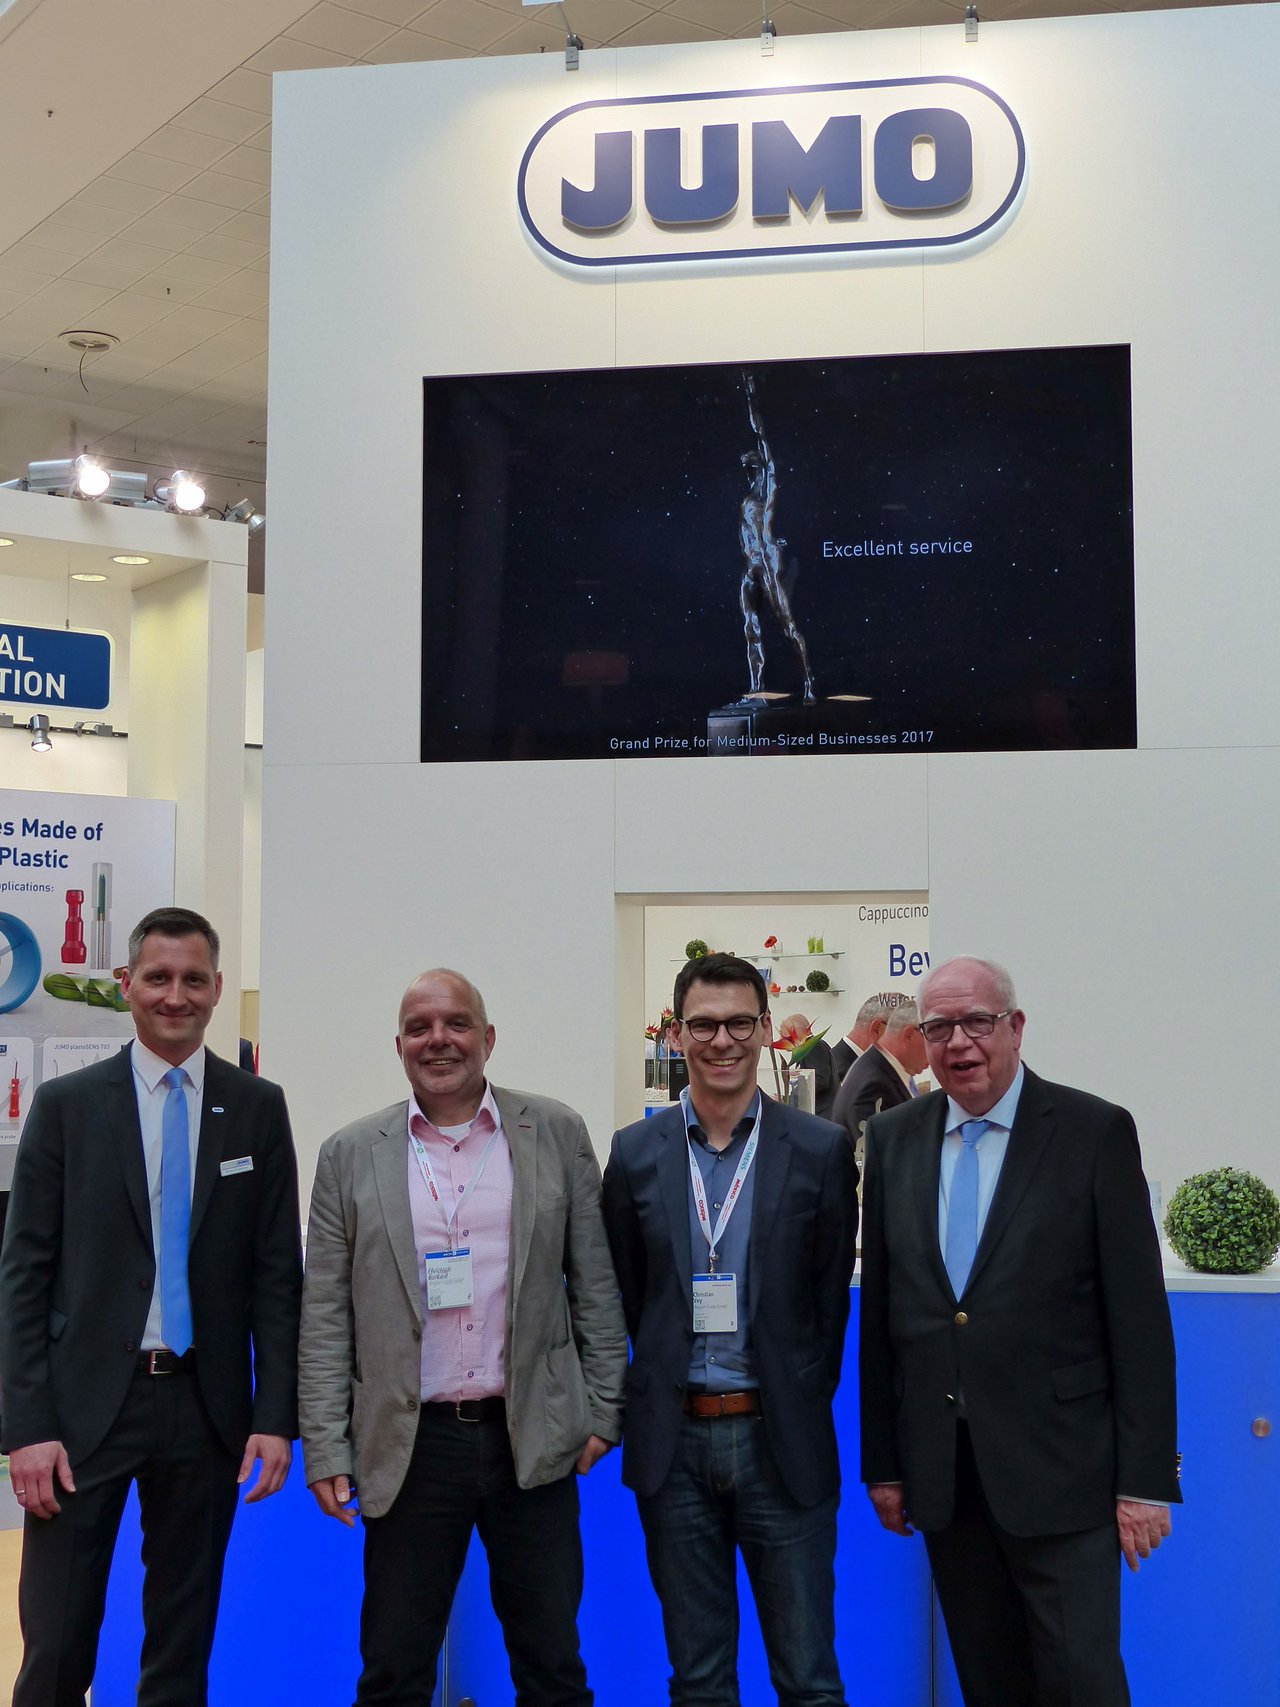 Zu Besuch auf dem Stand von JUMO. (von links) Marketingleiter Michael Diegelmann, Christoph Burkard, Christian Vey und Geschäftsführer Bernhard Juchheim.